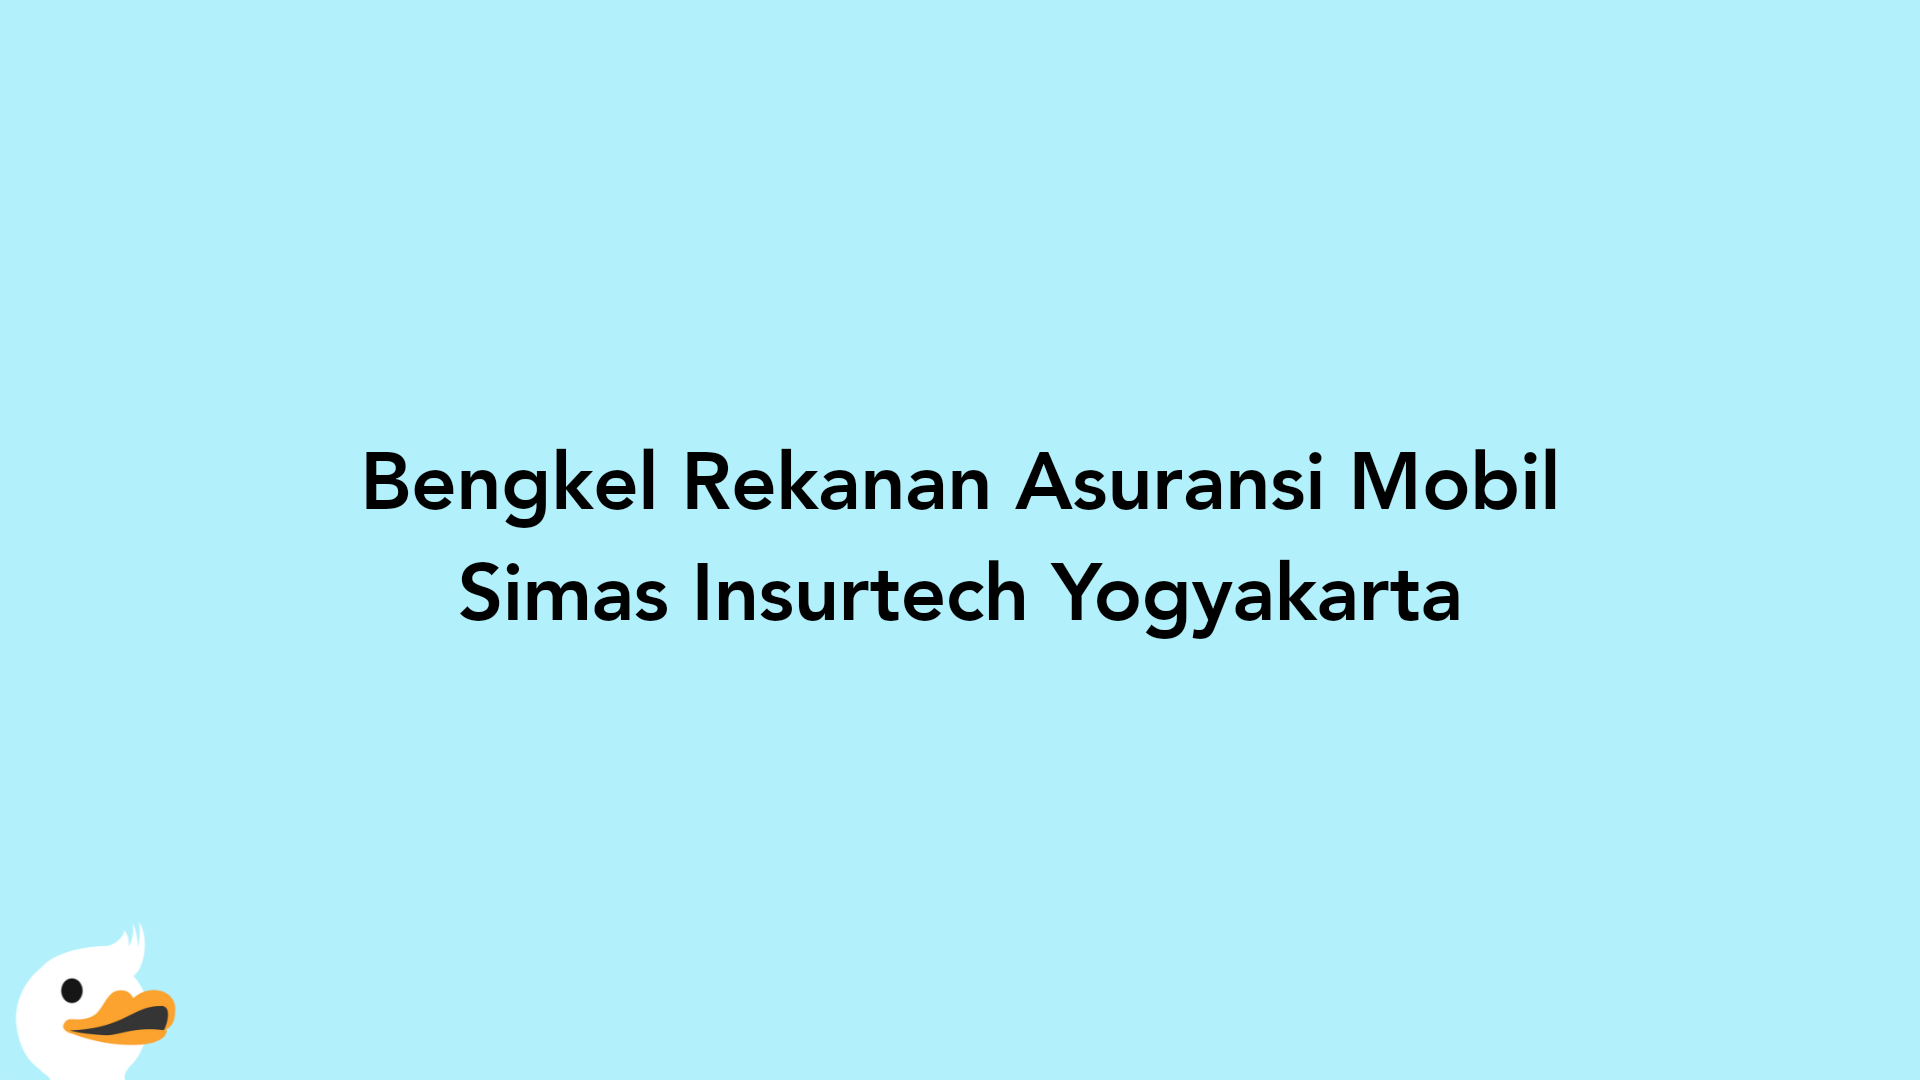 Bengkel Rekanan Asuransi Mobil Simas Insurtech Yogyakarta